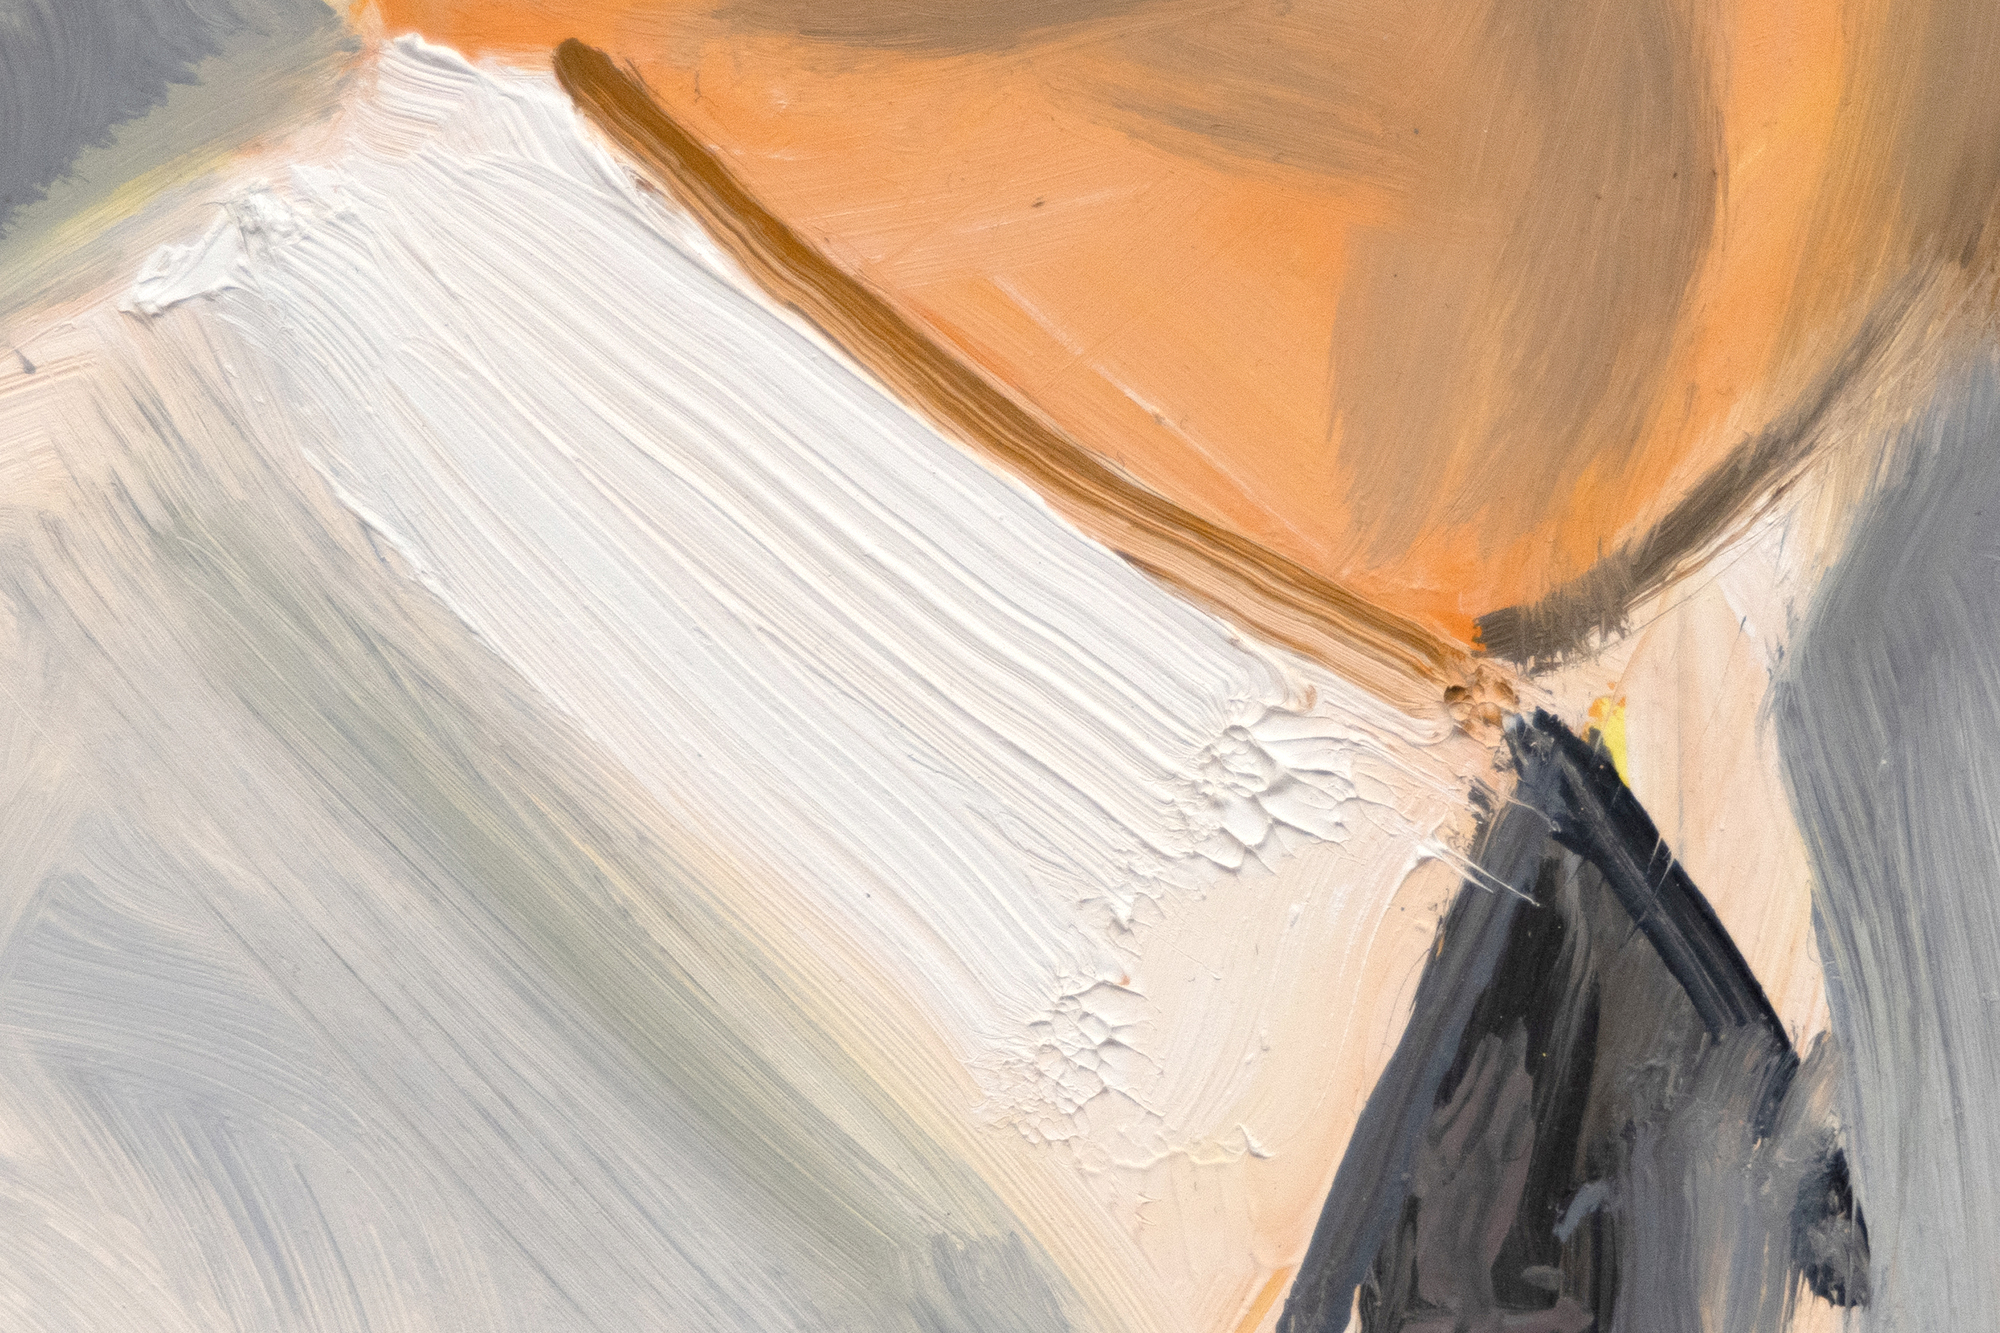 أليكس كاتز - بيتر - زيت على لوح ماسونيت - 15 7/8 × 7 1/8 بوصة.